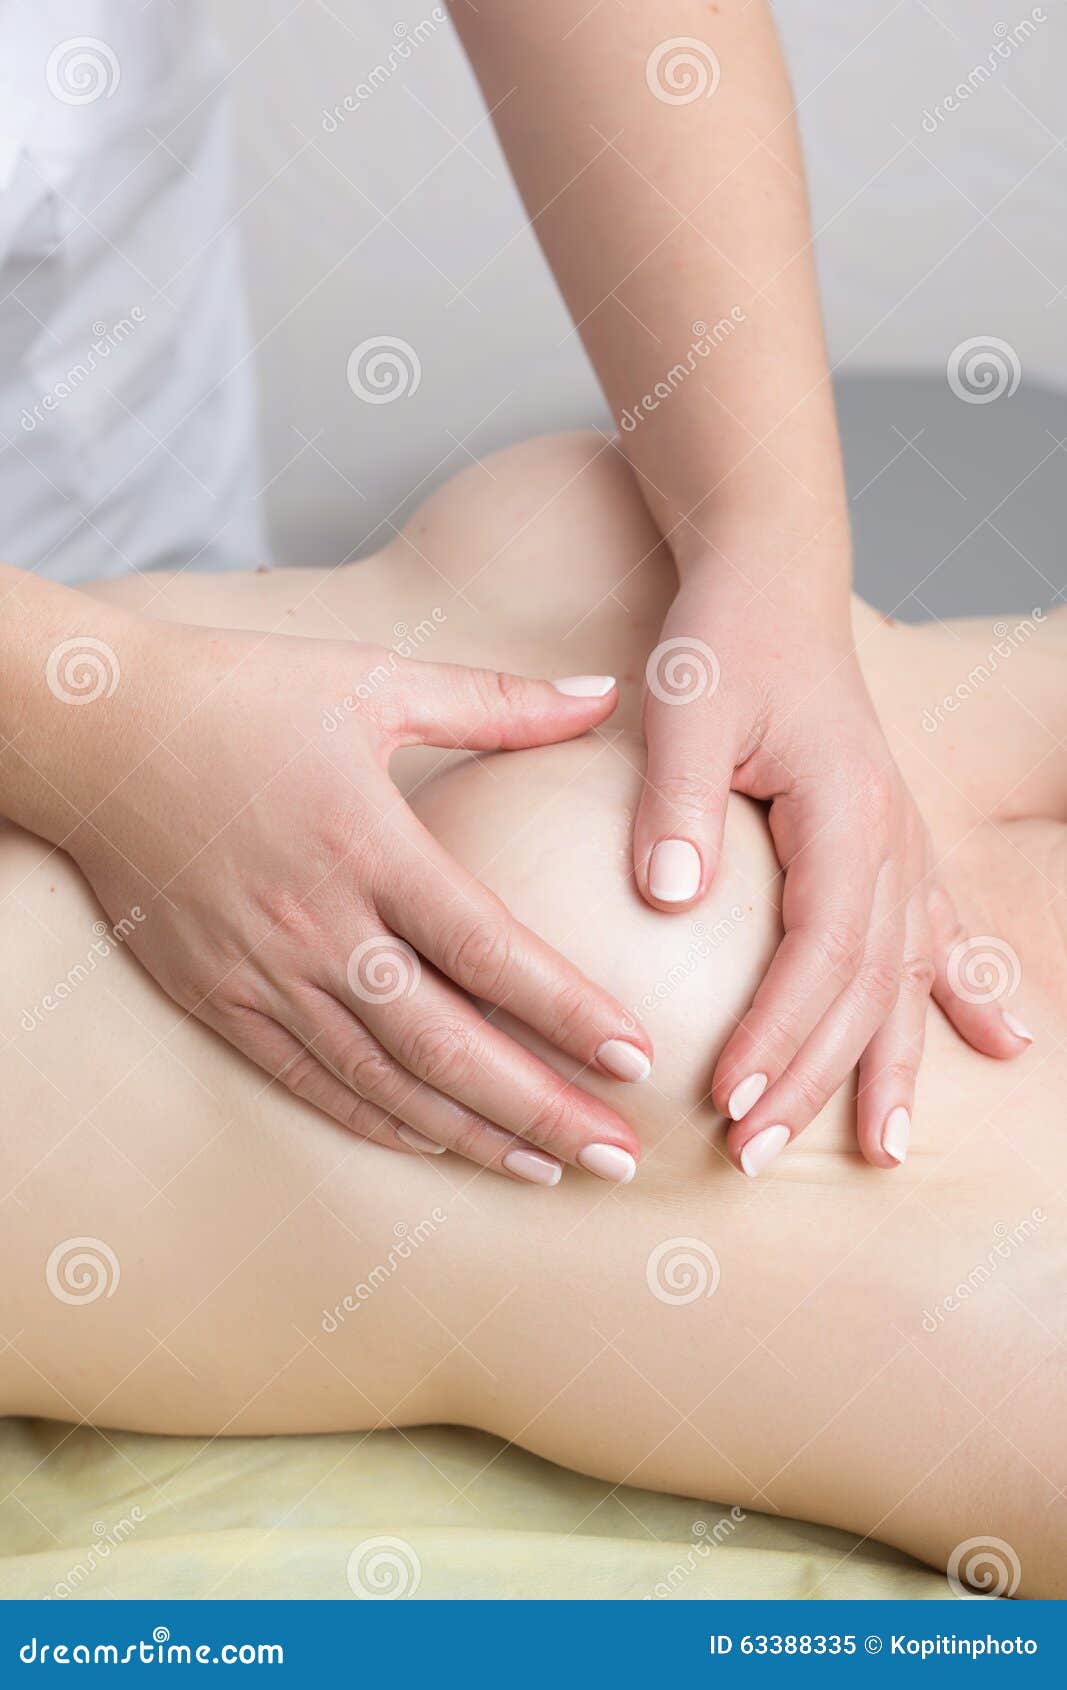 массаж который делается грудью фото 2